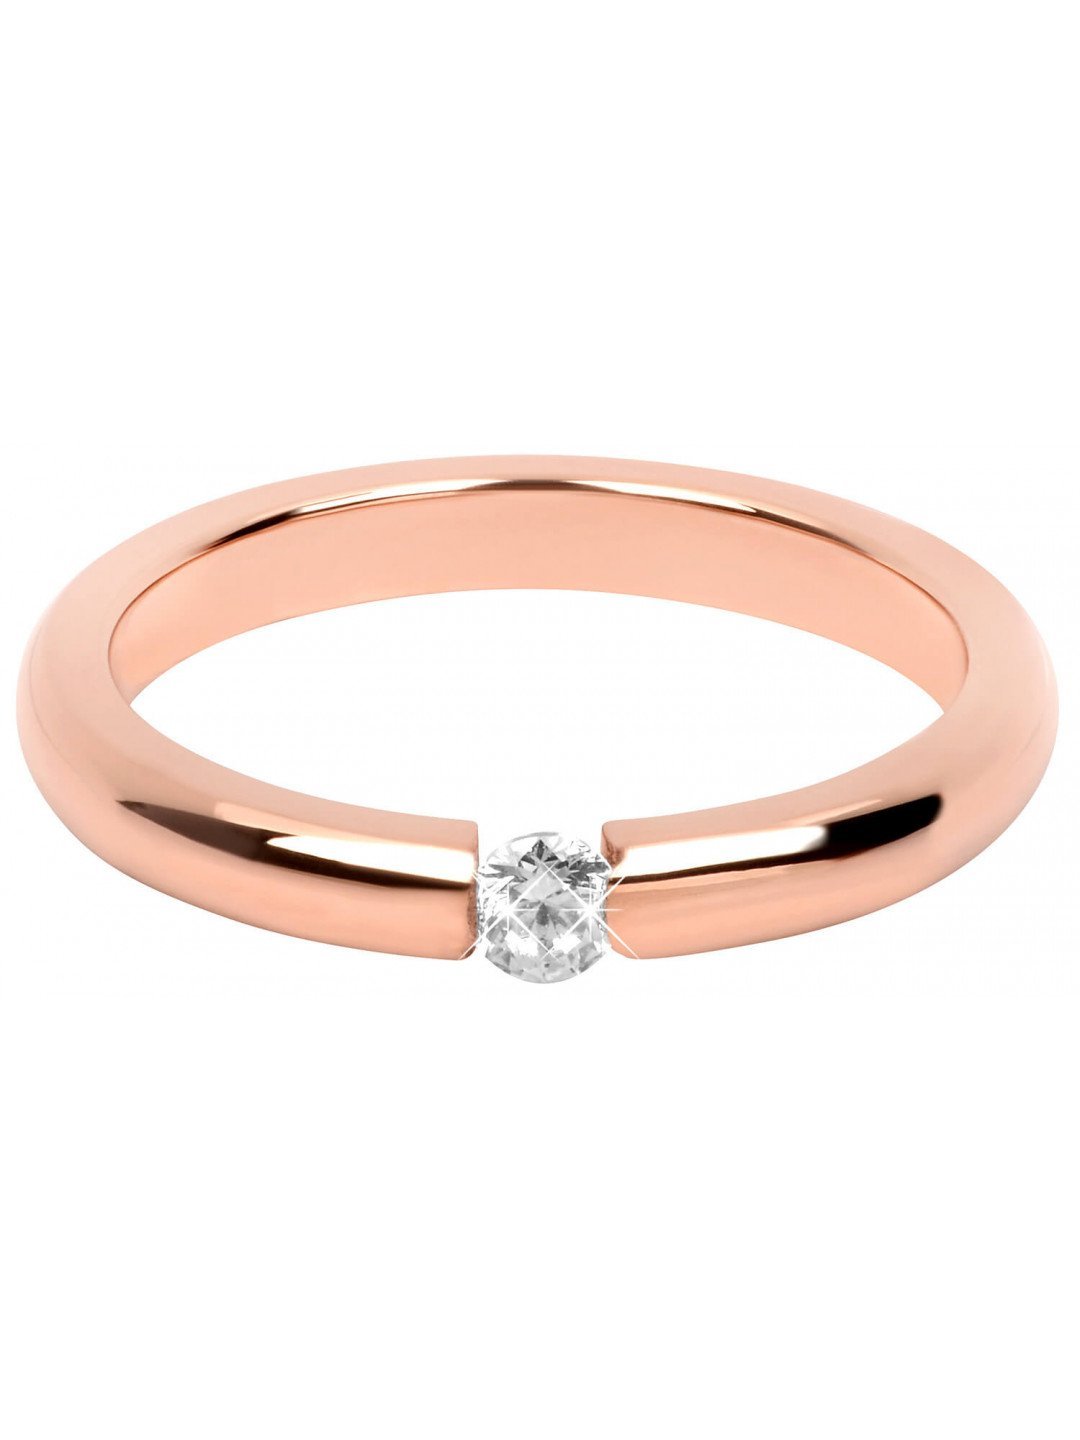 Troli Něžný růžově pozlacený ocelový prsten s krystalem 55 mm